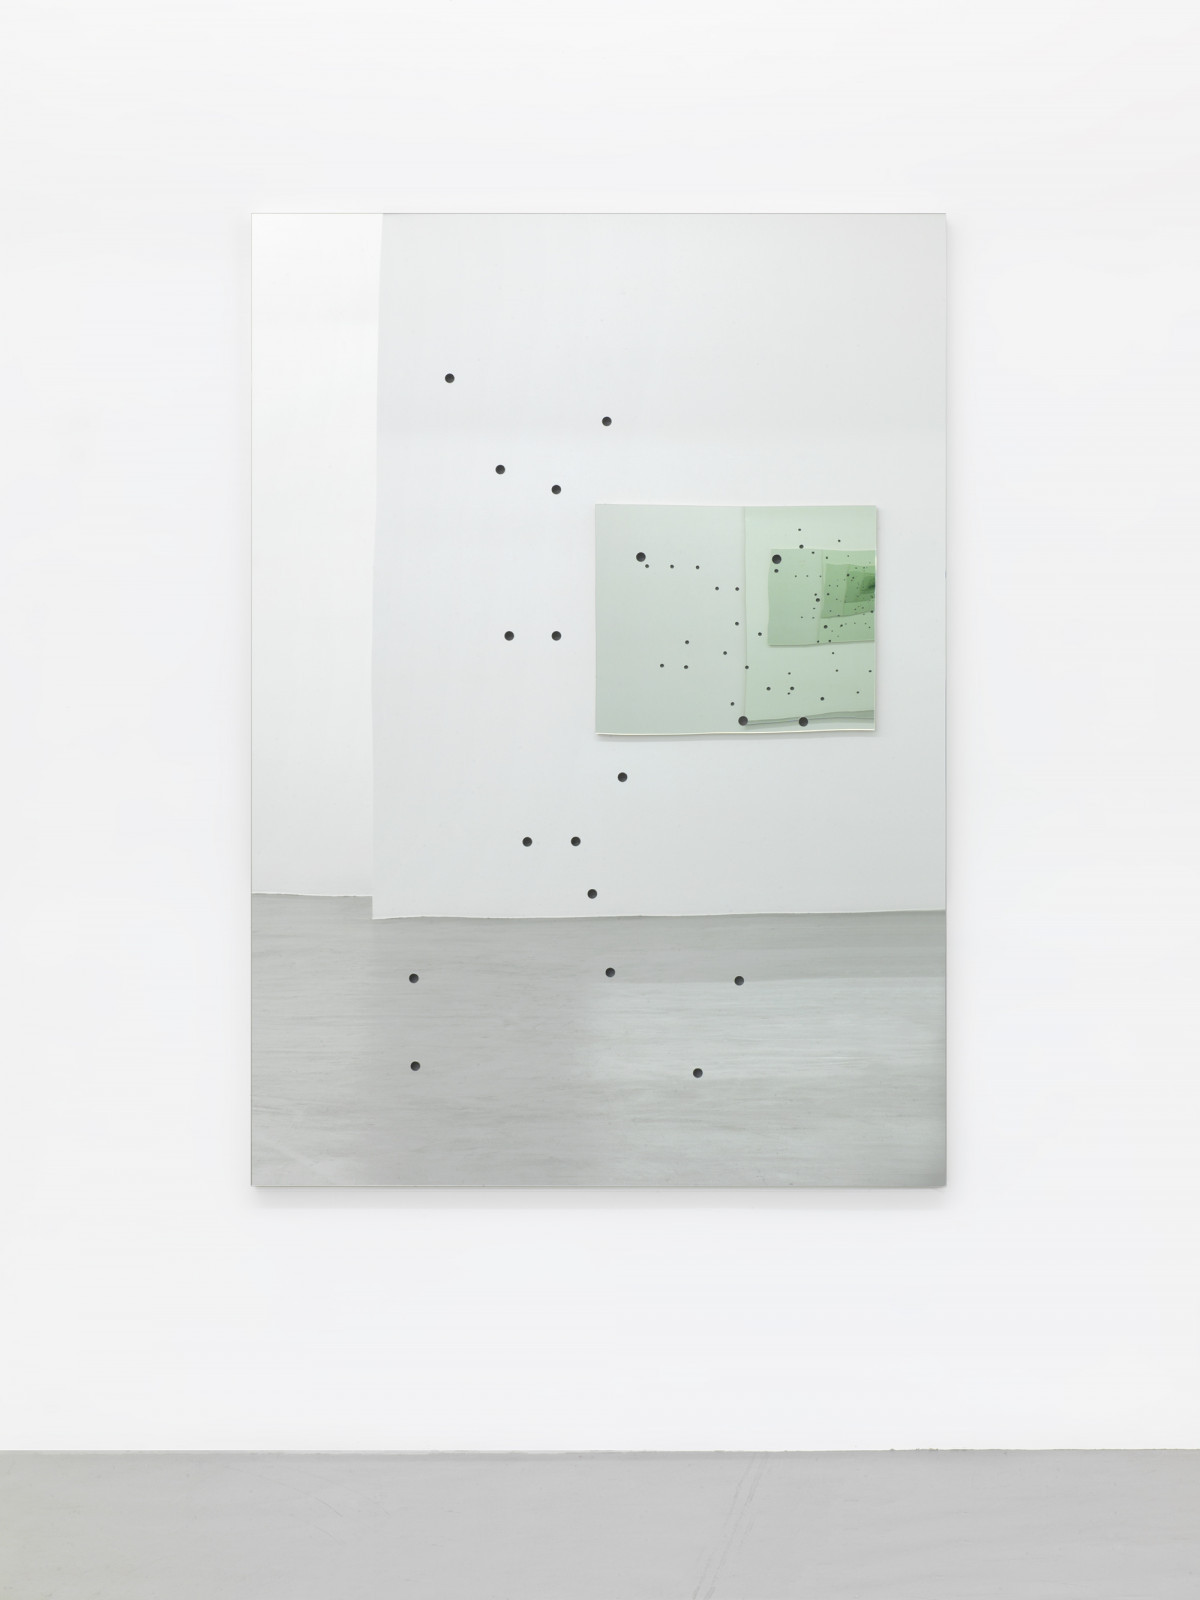 Alberto Garutti, ‘Piccolo paesaggio domestico con occhio di Luca’, 1990, perforated mirror, wood